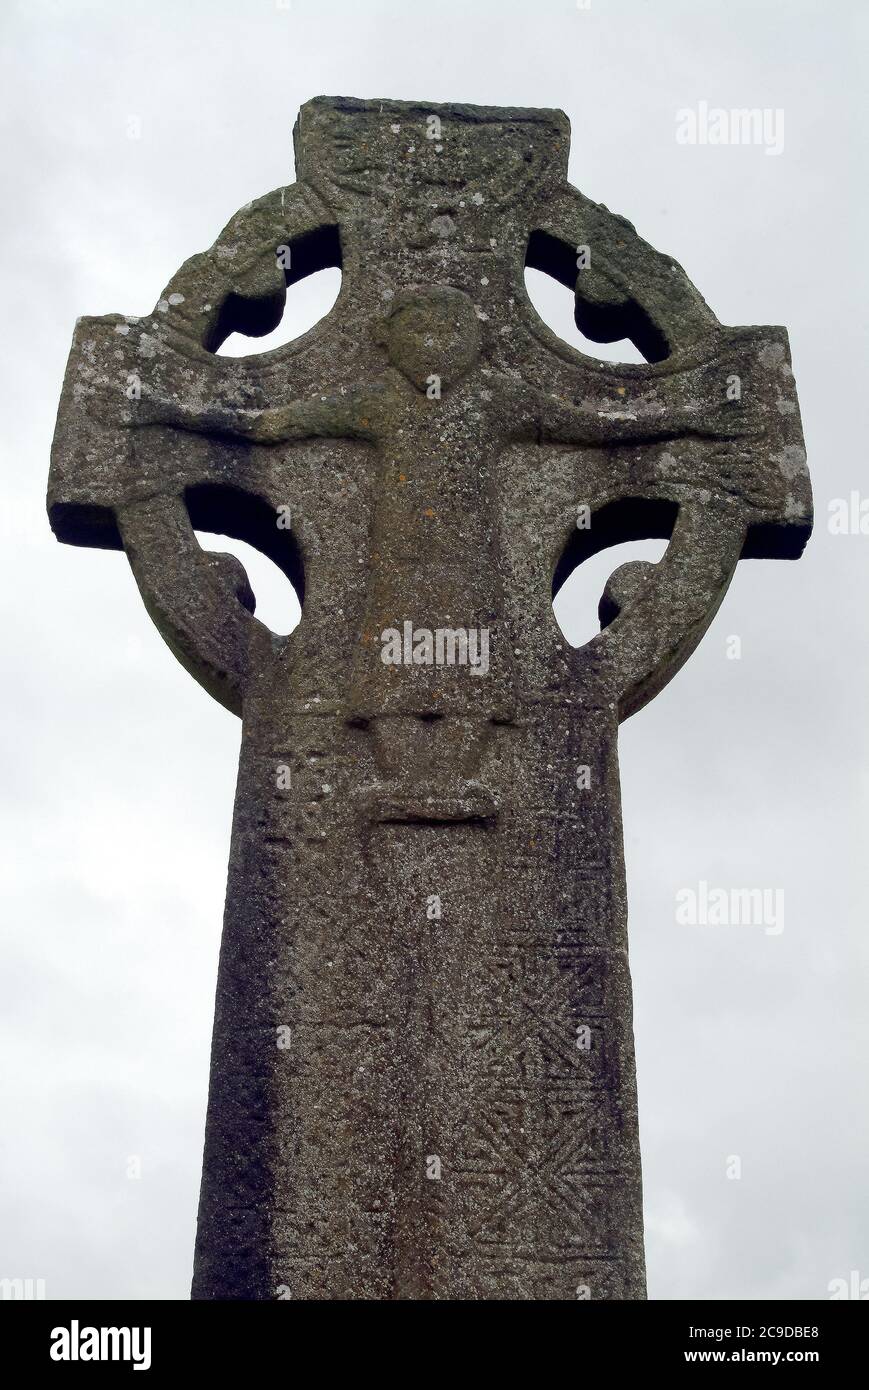 Croix de pierre, Cathédrale de Kilfenora, Cathédrale Saint-Fachtnan, Kilfenora, Cill Fhionnúrach, Comté de Clare, Irlande, Éire, Irland, Írország, Europe Banque D'Images